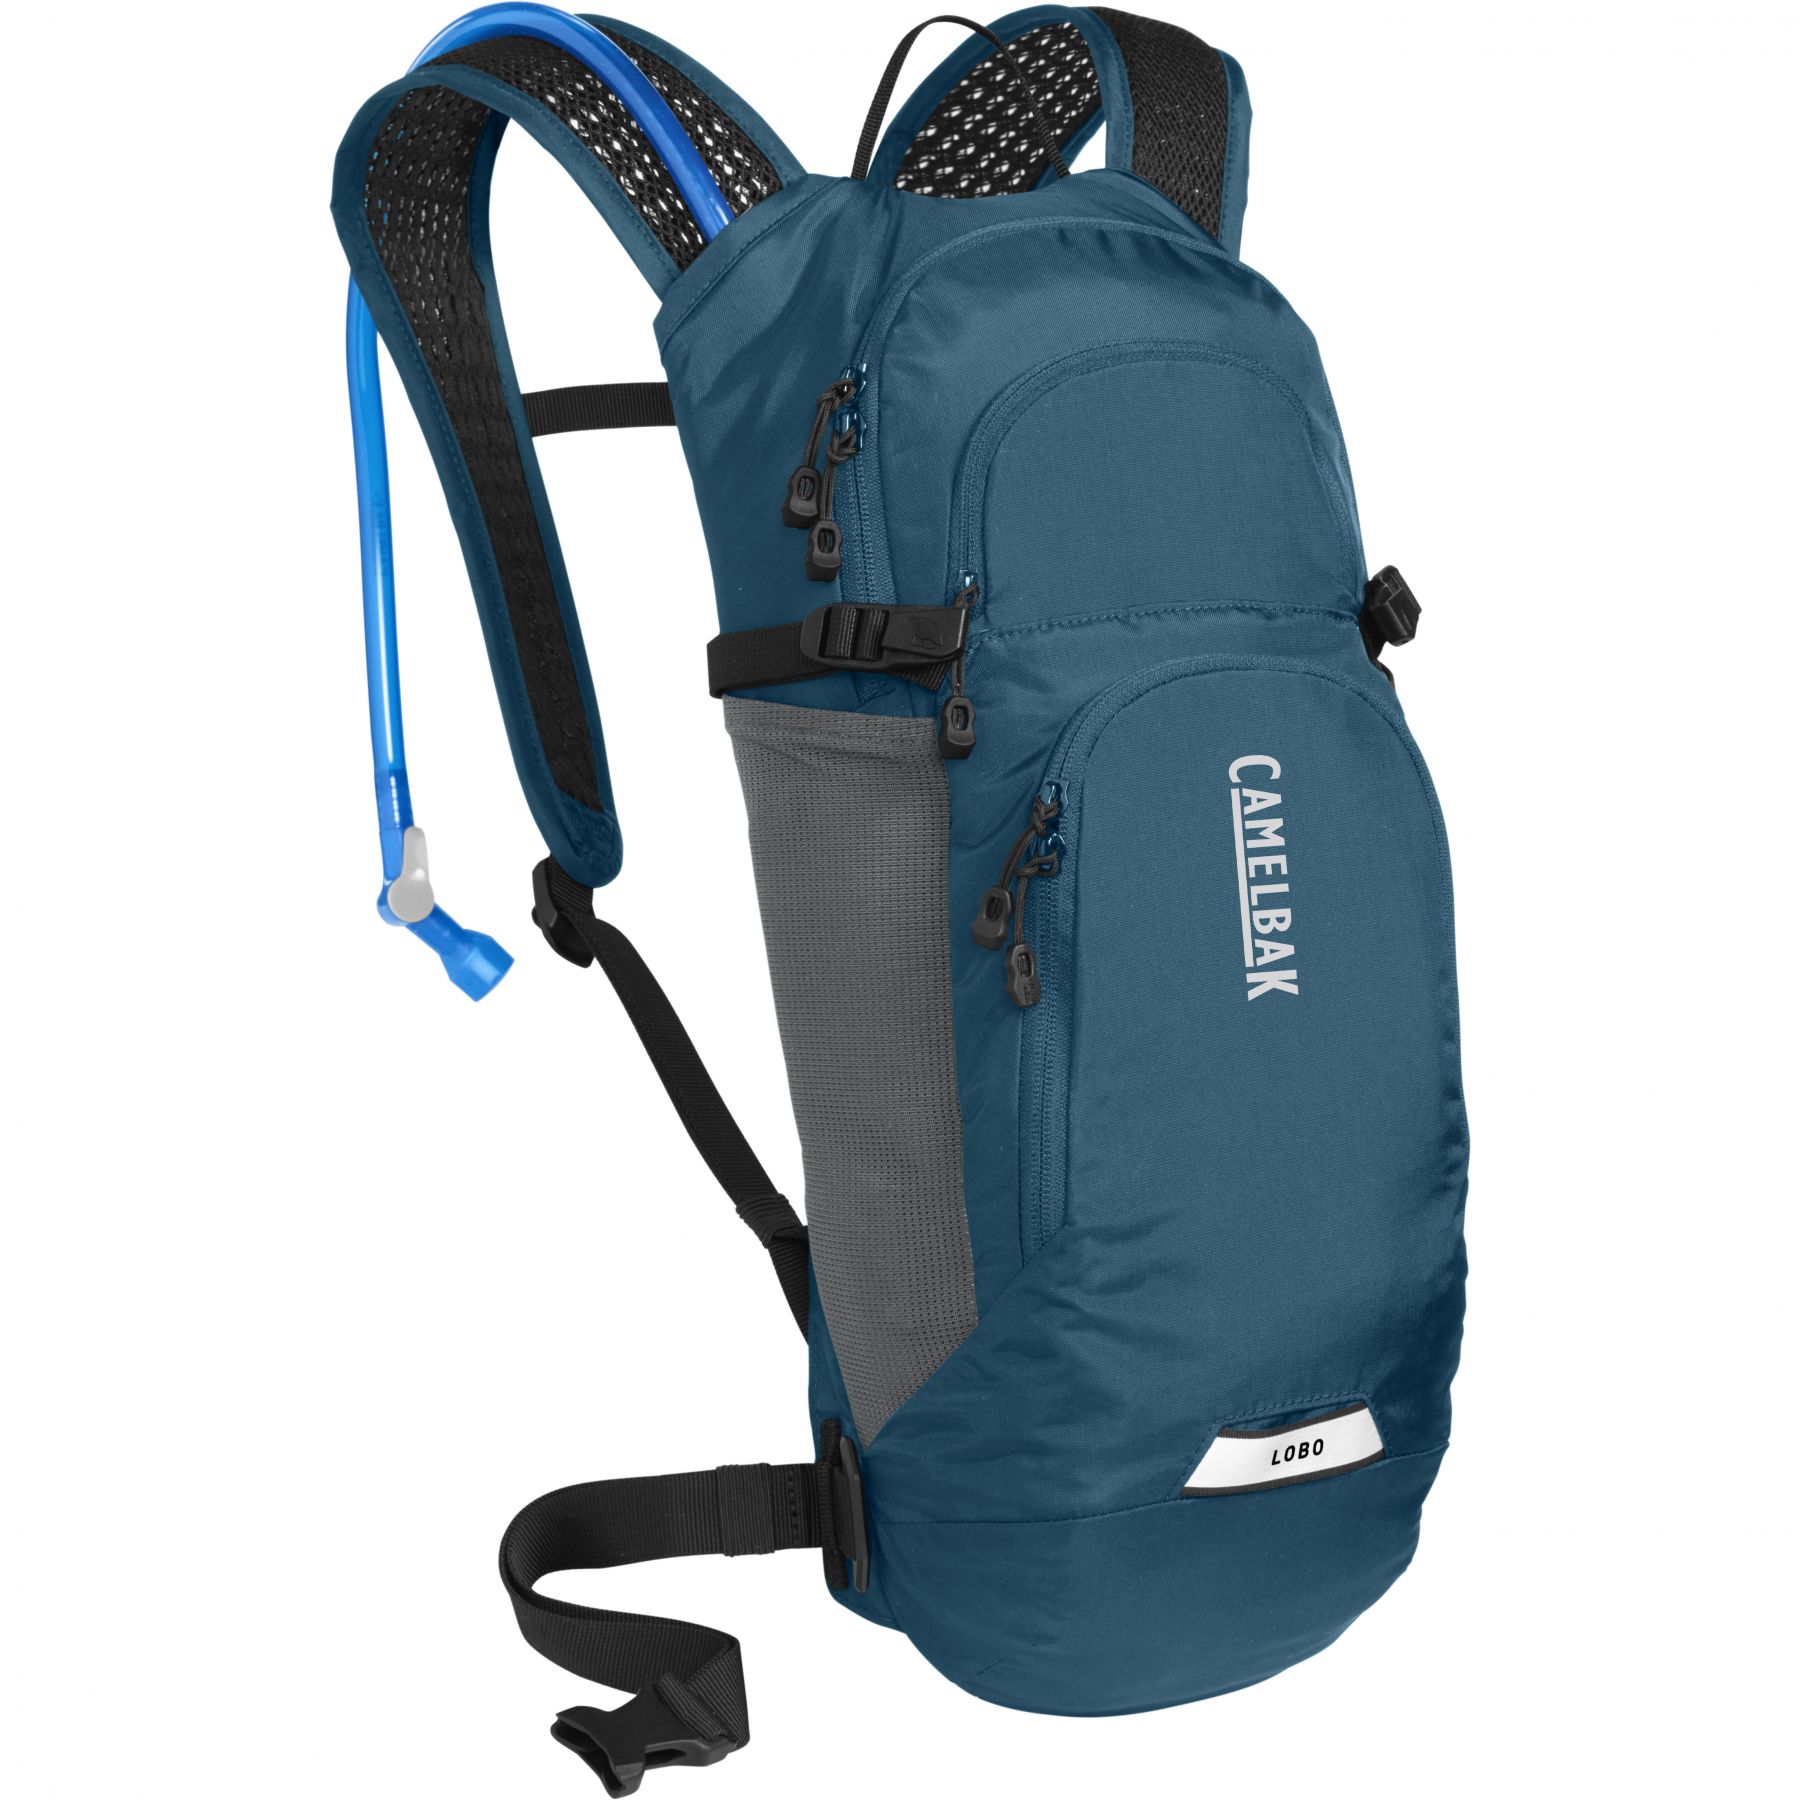 Brug CamelBak Lobo 9, rygsæk, 2L, blå til en forbedret oplevelse